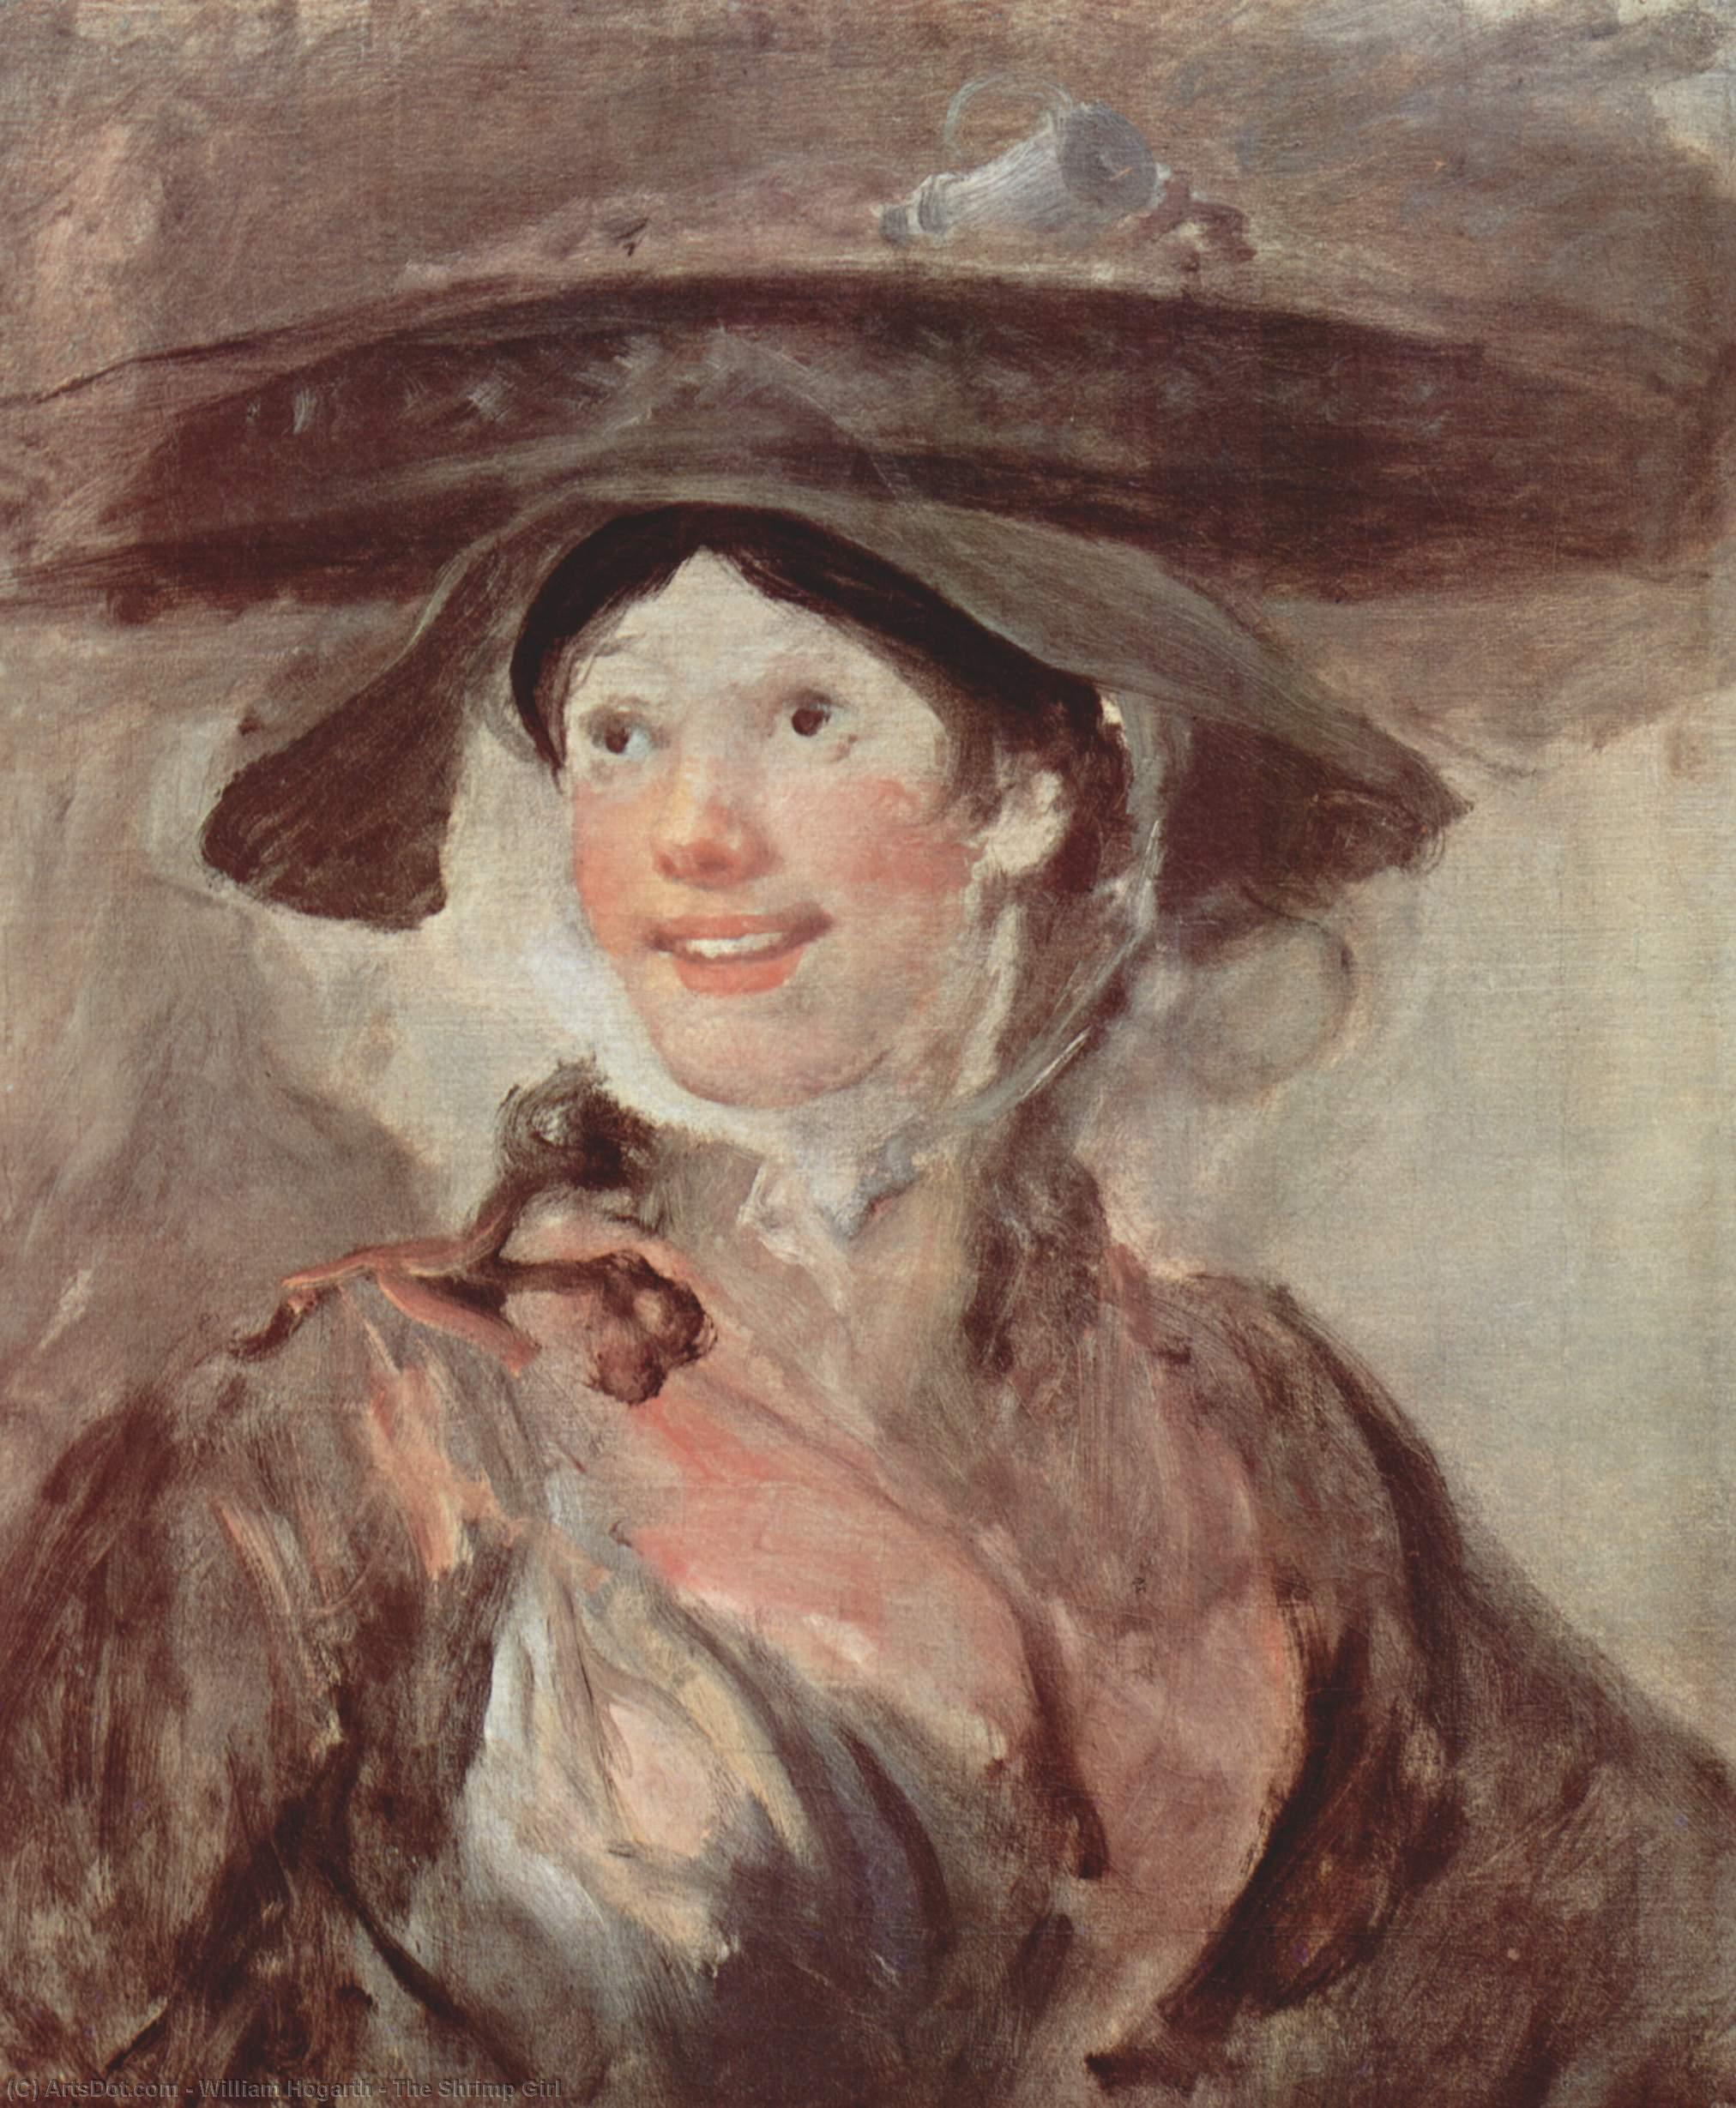 WikiOO.org - Εγκυκλοπαίδεια Καλών Τεχνών - Ζωγραφική, έργα τέχνης William Hogarth - The Shrimp Girl